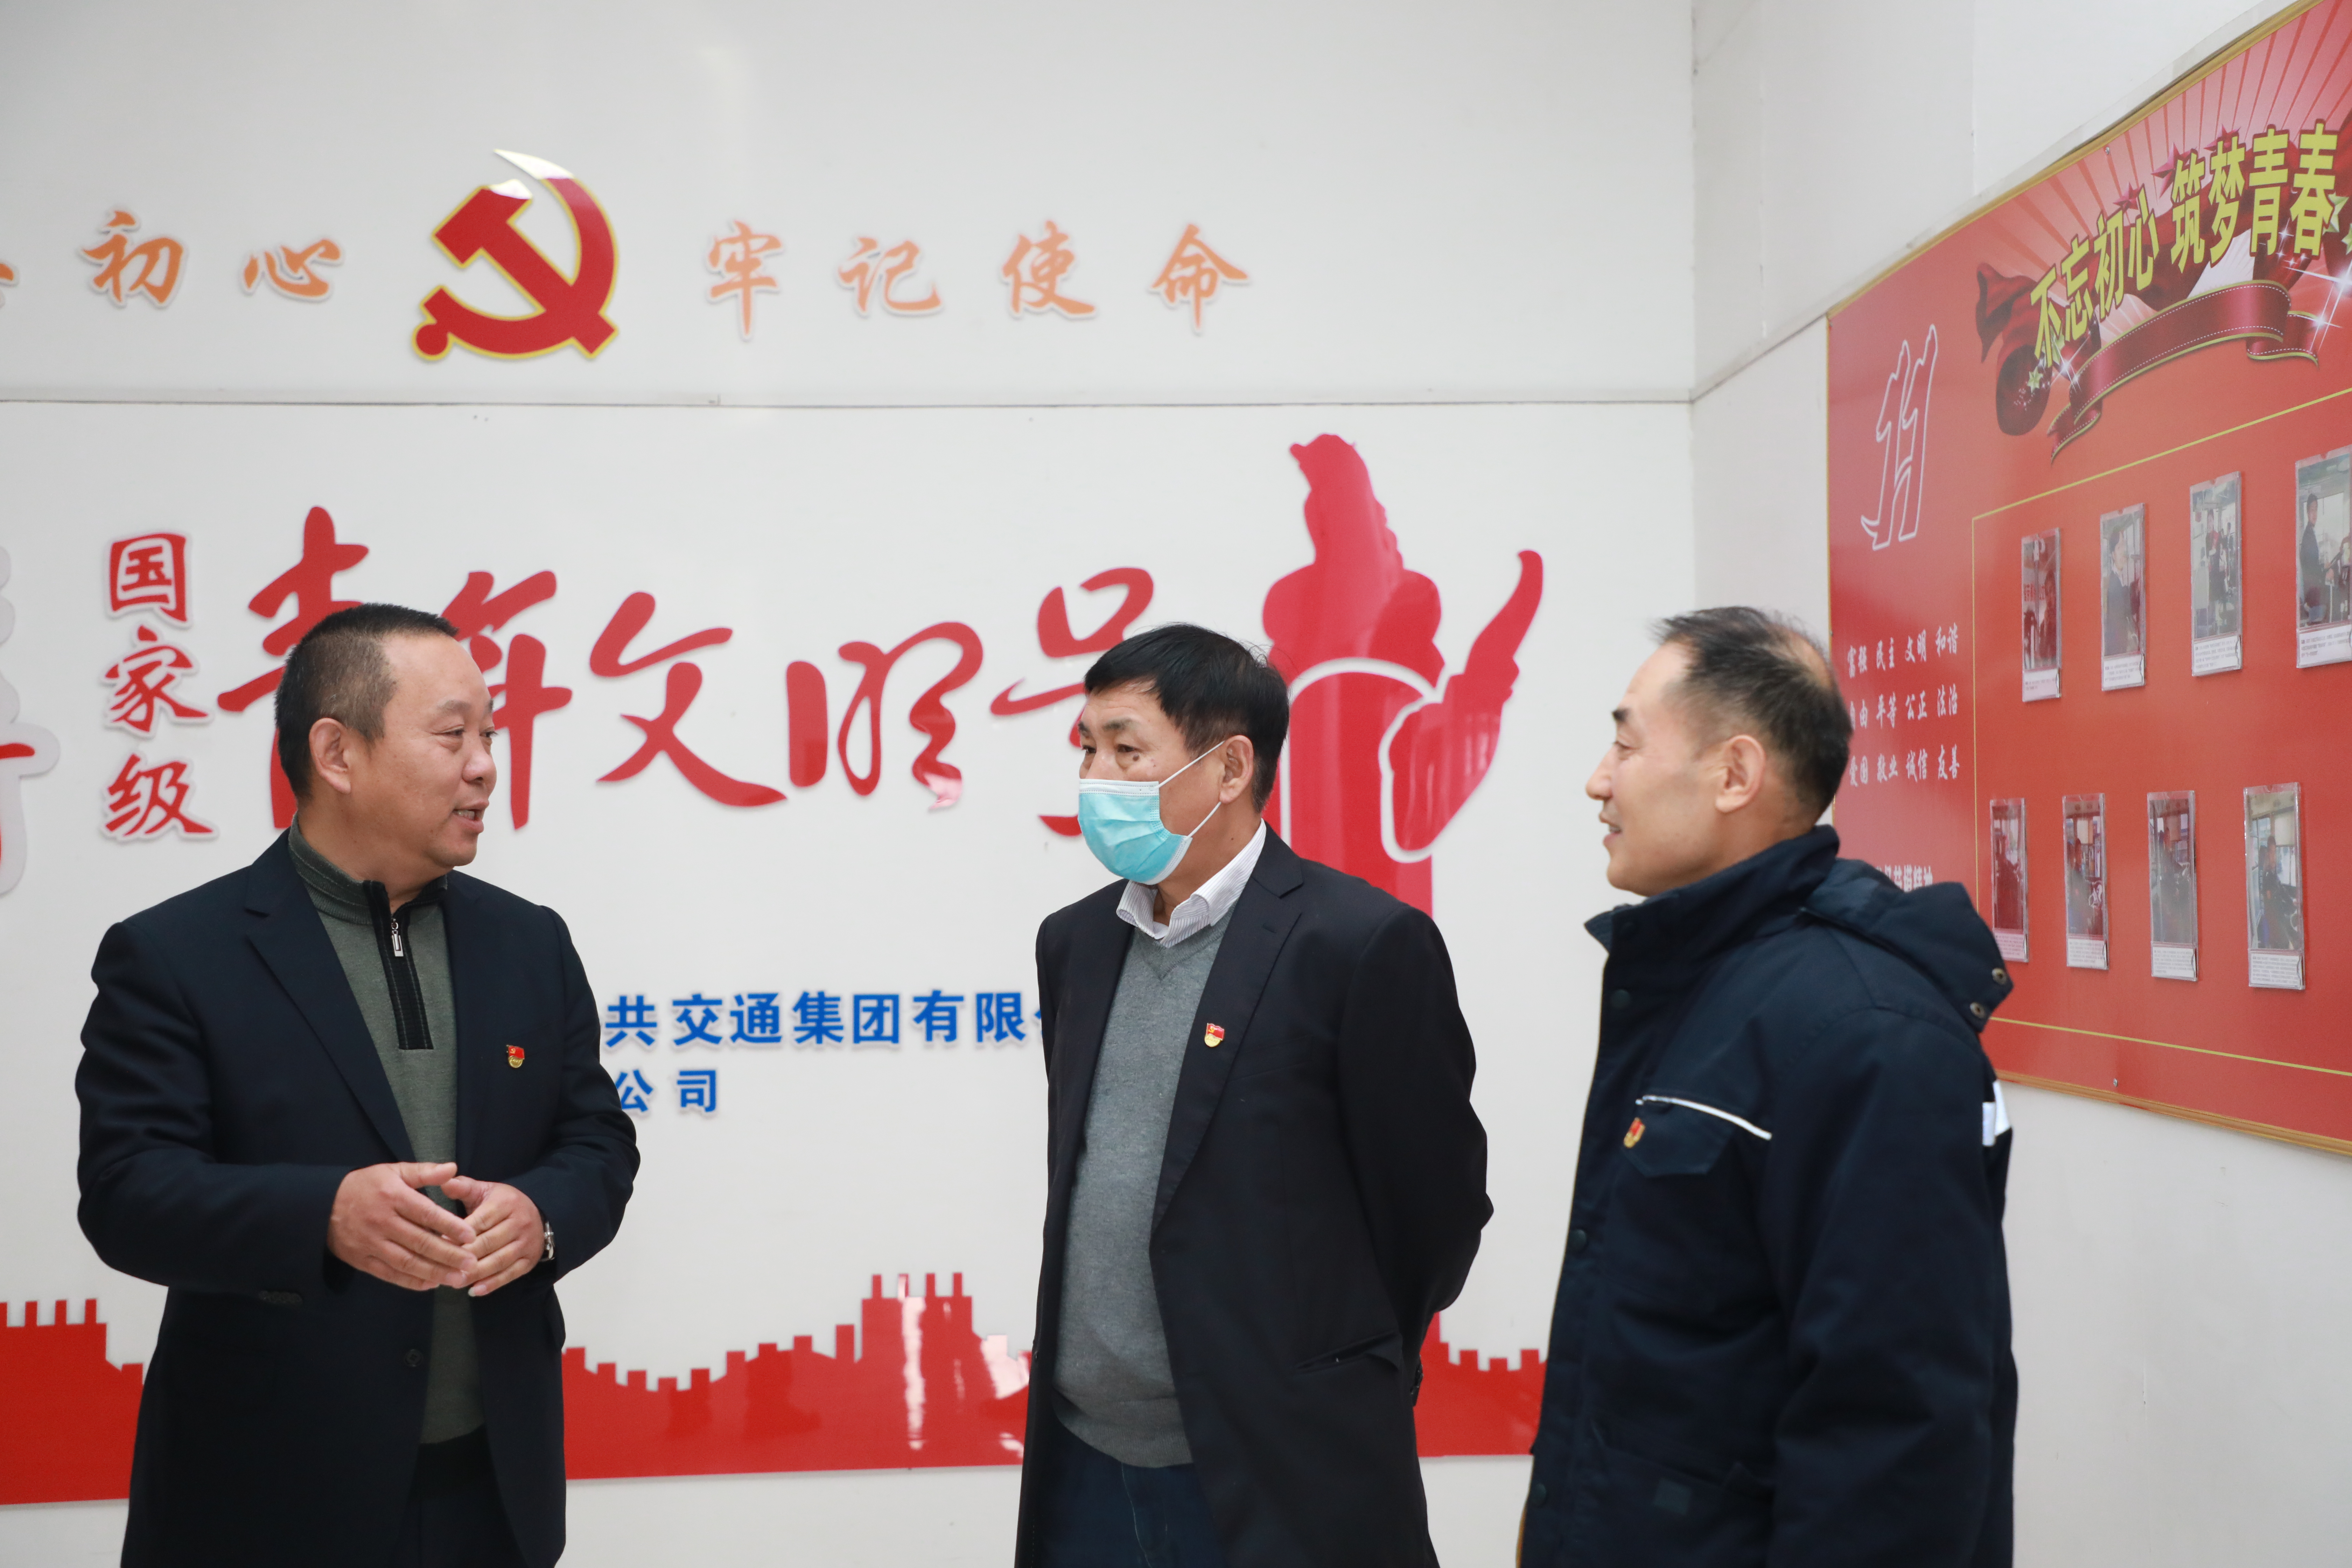 集团党委副书记、总司理吴昊到公交新区党支部加入主题党日运动